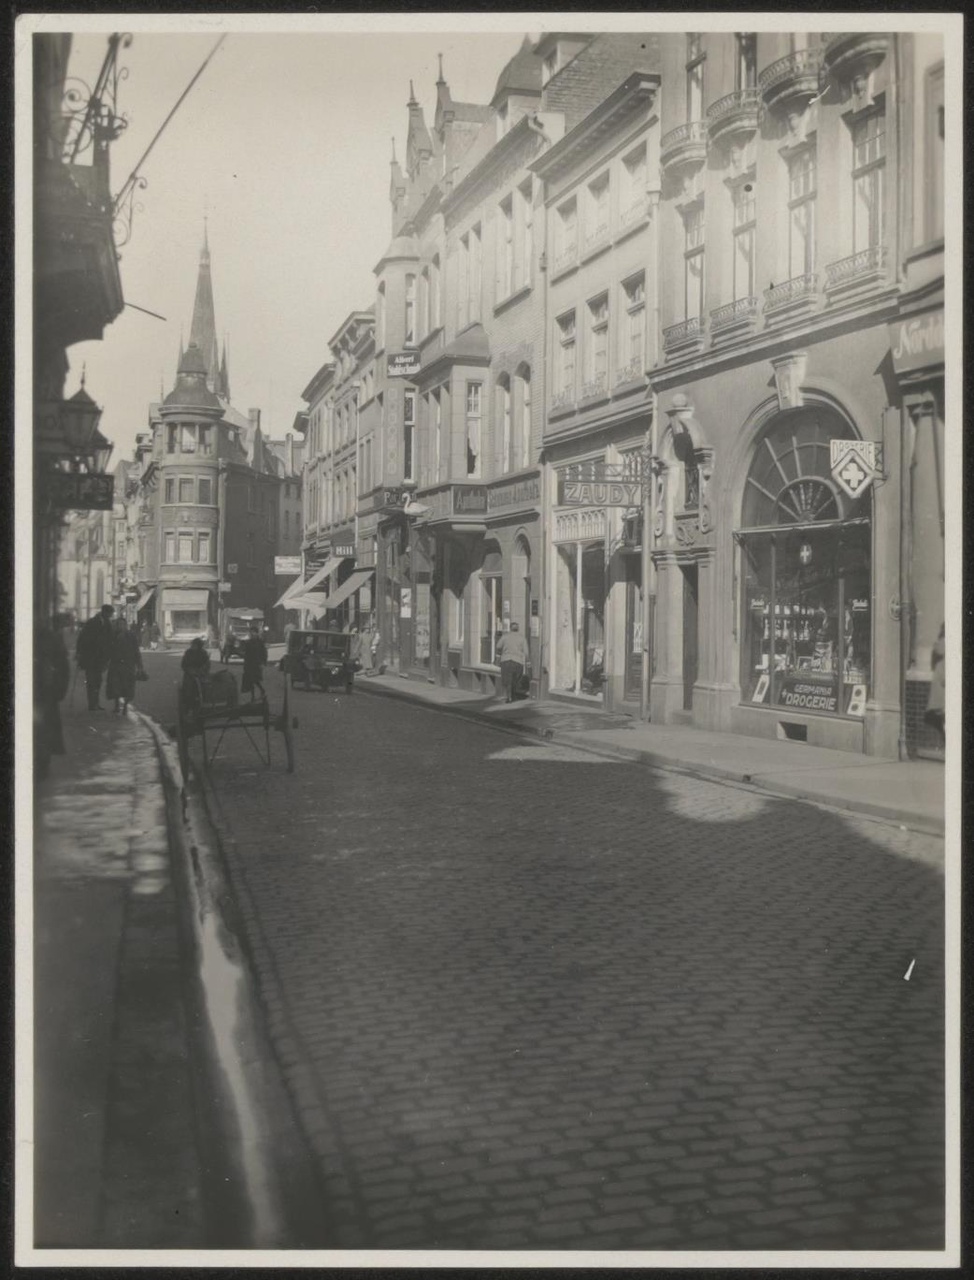 Afbeelding van winkel Zaudy, gevel oude toestand, 1928